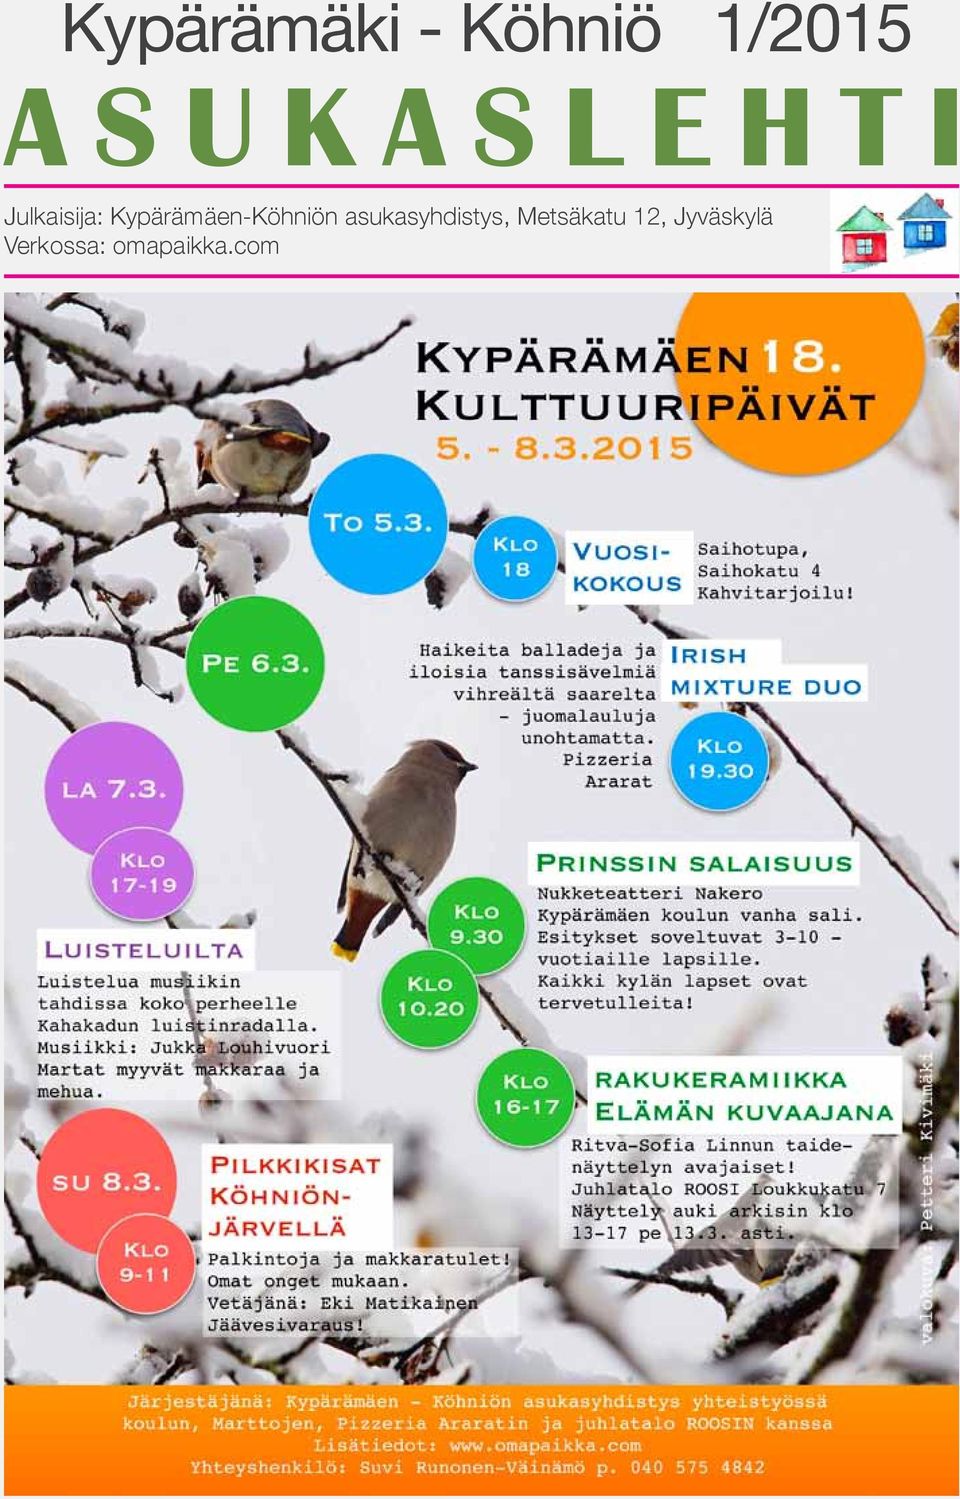 Jyväskylä Verkossa: omapaikka.